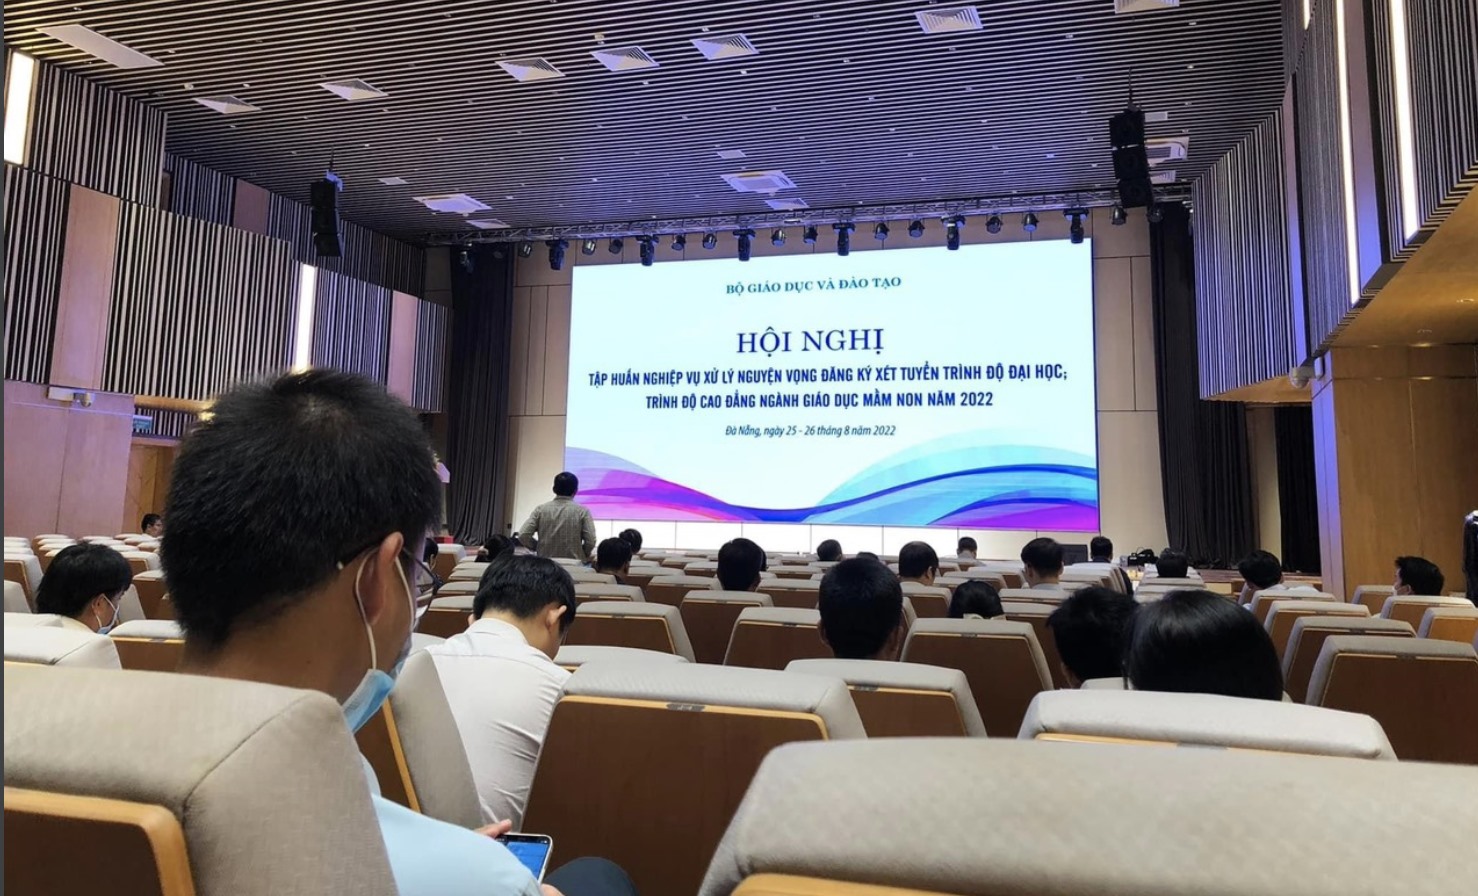 Hội nghị tập huấn nghiệp vụ xử lý nguyện vọng đăng ký xét tuyển đại học đang diễn ra tại Đà Nẵng - Ảnh: T.H.